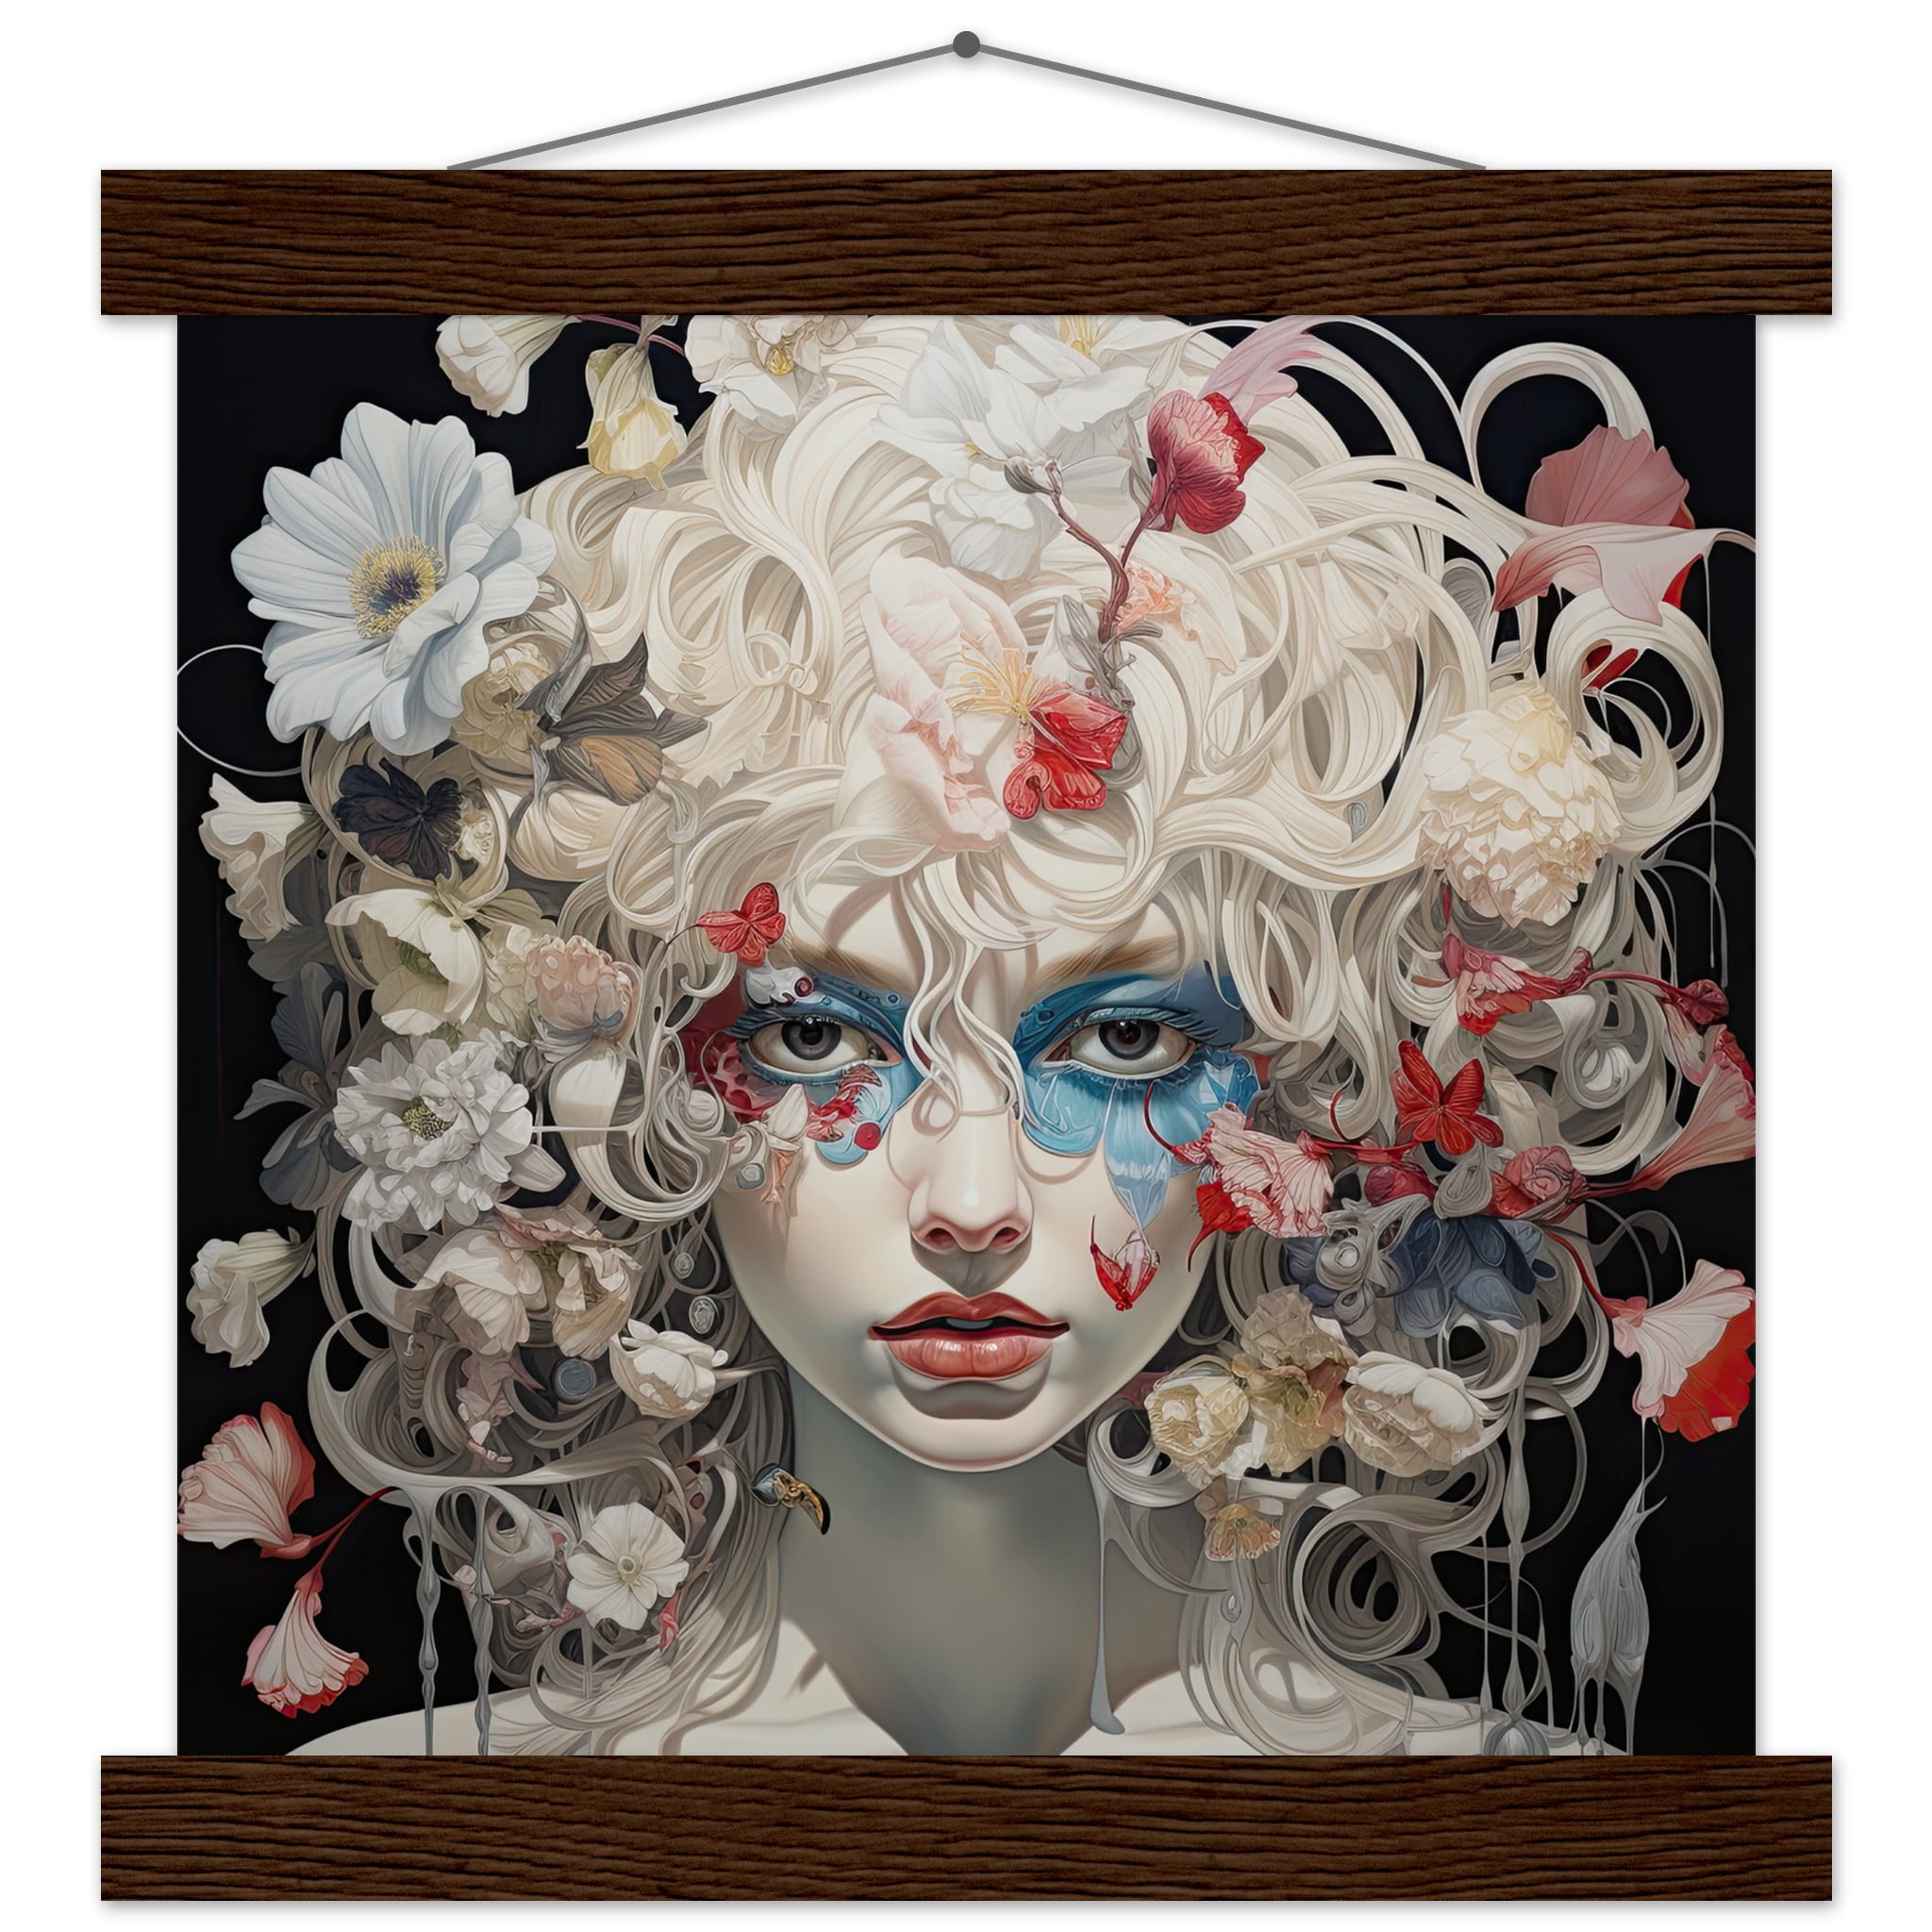 Flower Girl Art Print with Hanger – 25×25 cm / 10×10″, Dark wood wall hanger